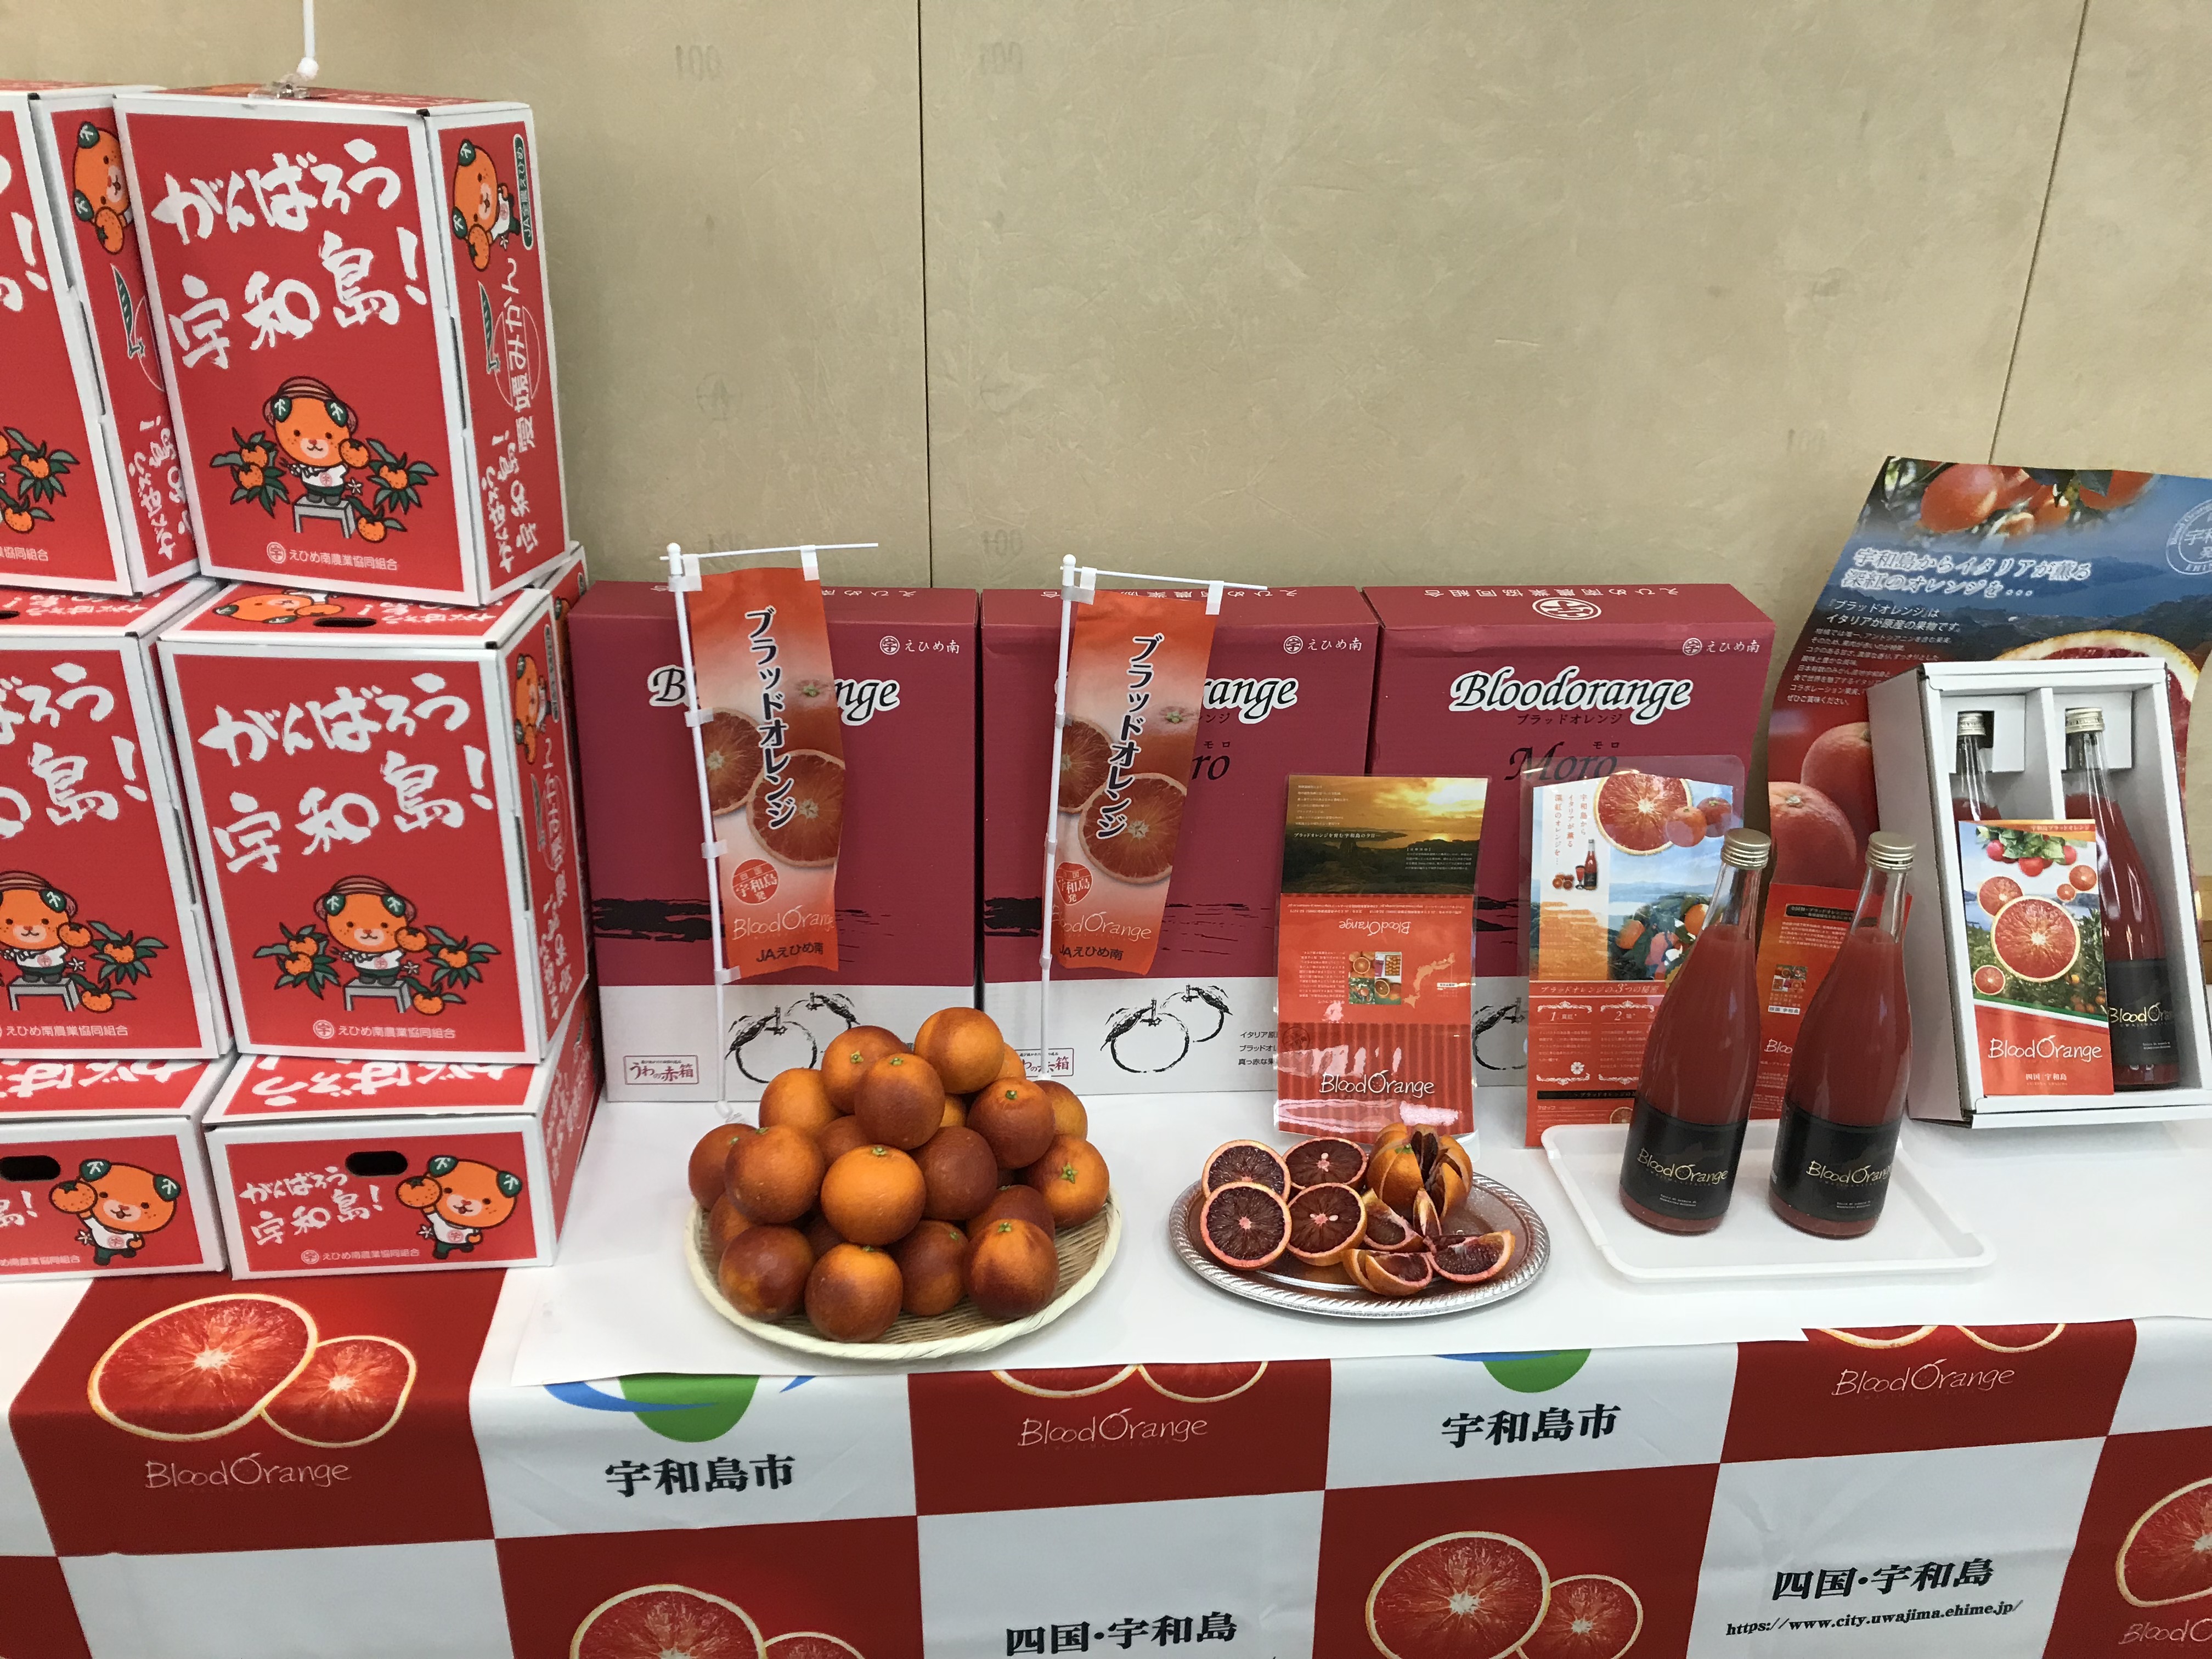 「エールマーケット」で販売されるブラッドオレンジ、ブラッドオレンジジュースの画像